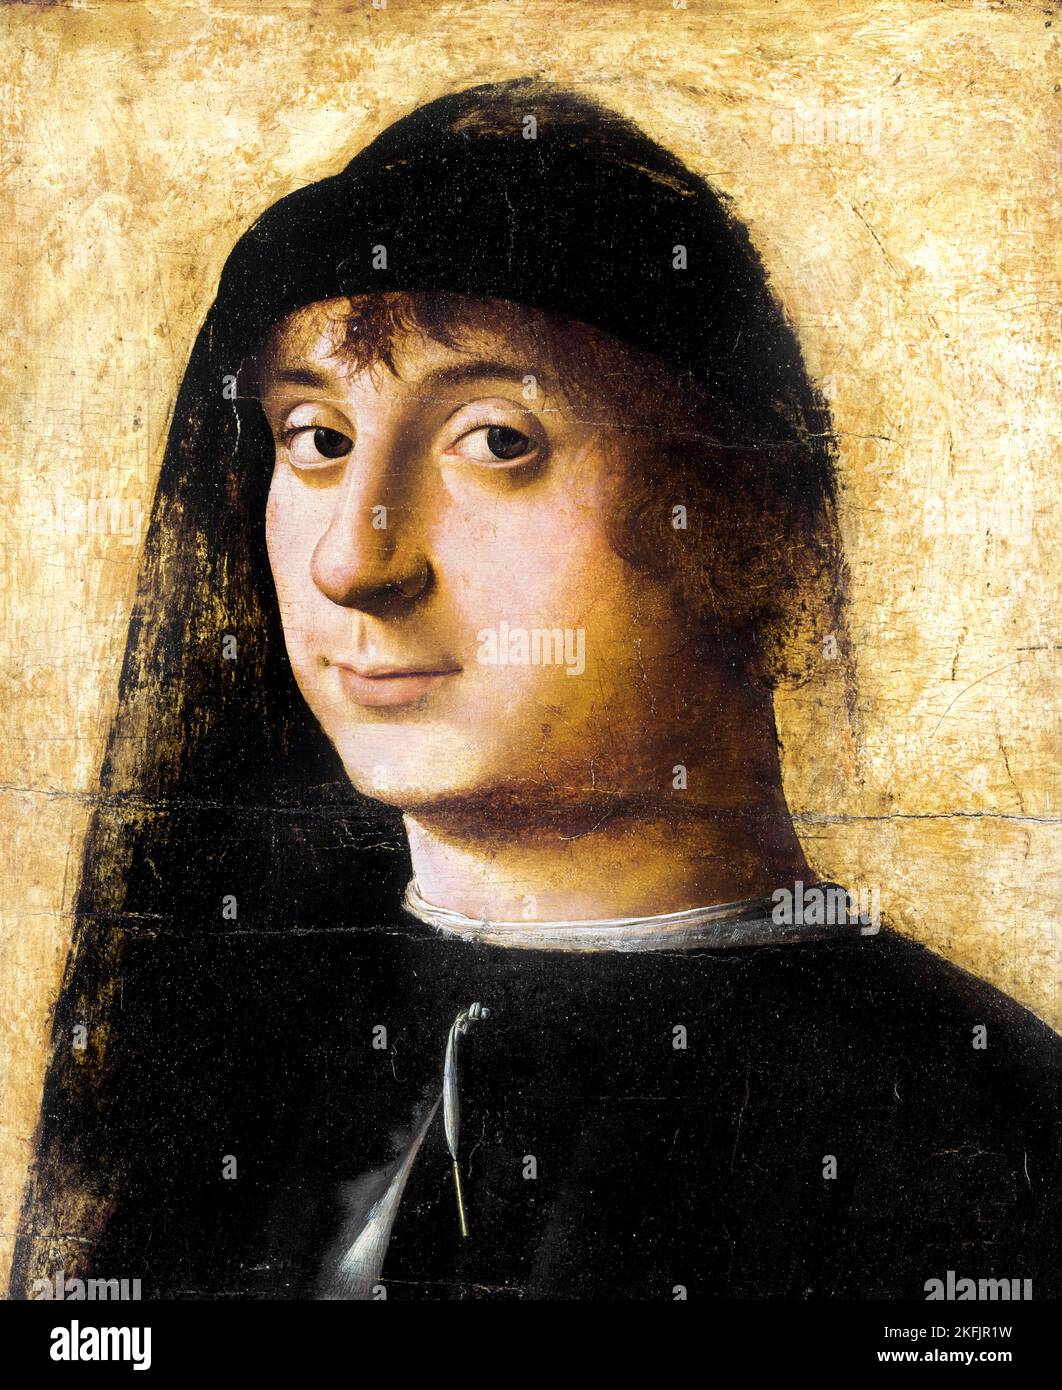 Antonello da Messina; Ritratto di un giovane gentiluomo; circa 1470-1474; olio su tavola; Philadelphia Museum of Art, USA. Foto Stock